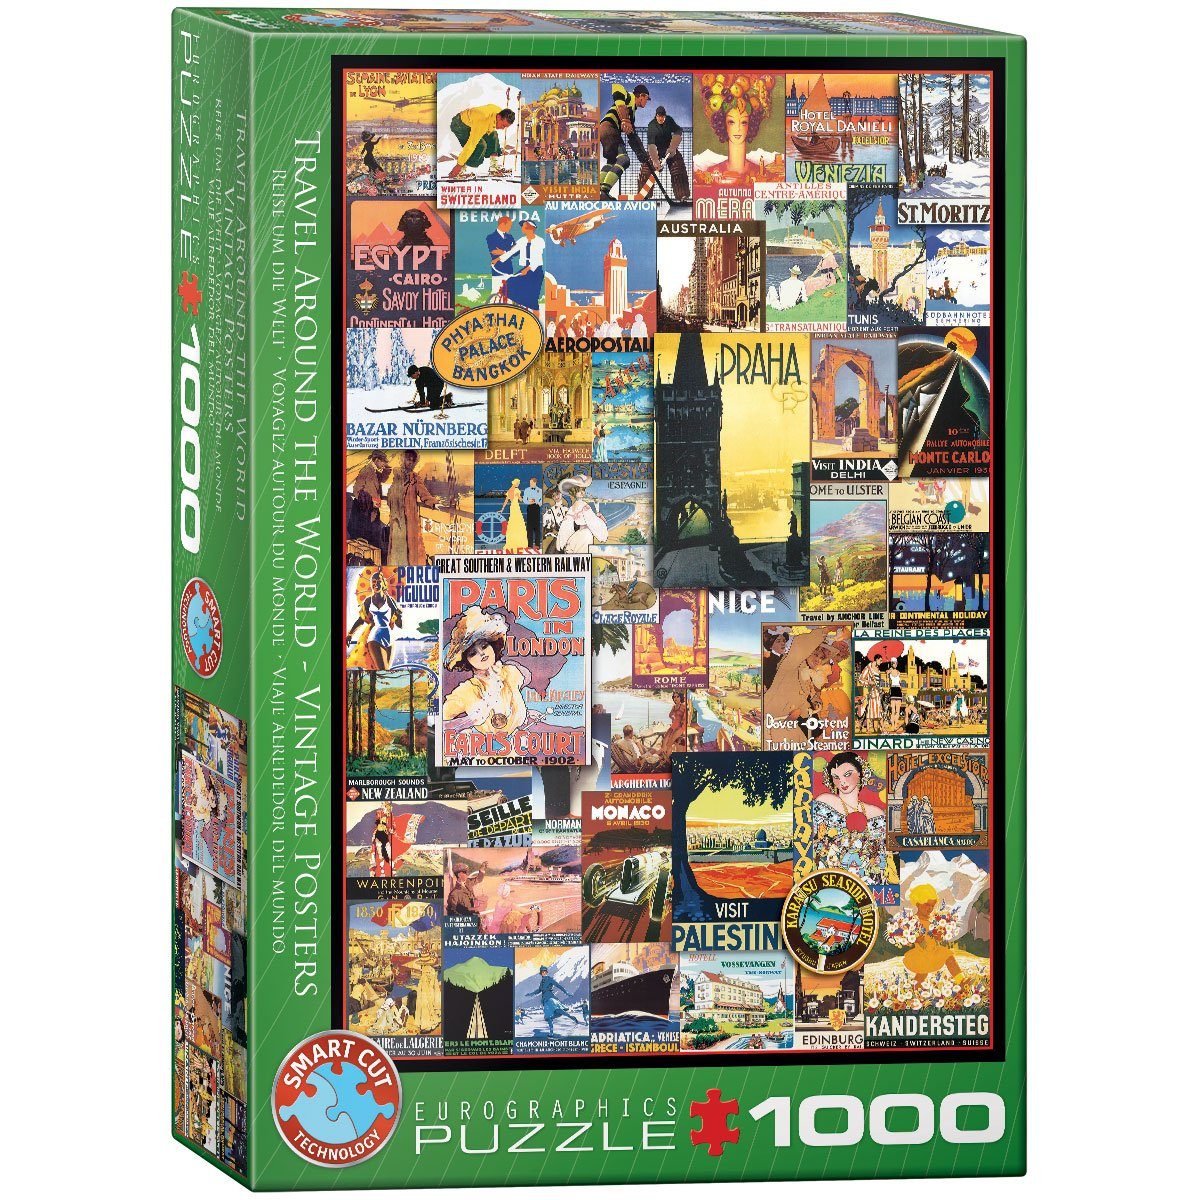 EUROGRAPHICS Puzzle Reise um die Welt 1000-Teile Puzzle, 1000 Puzzleteile